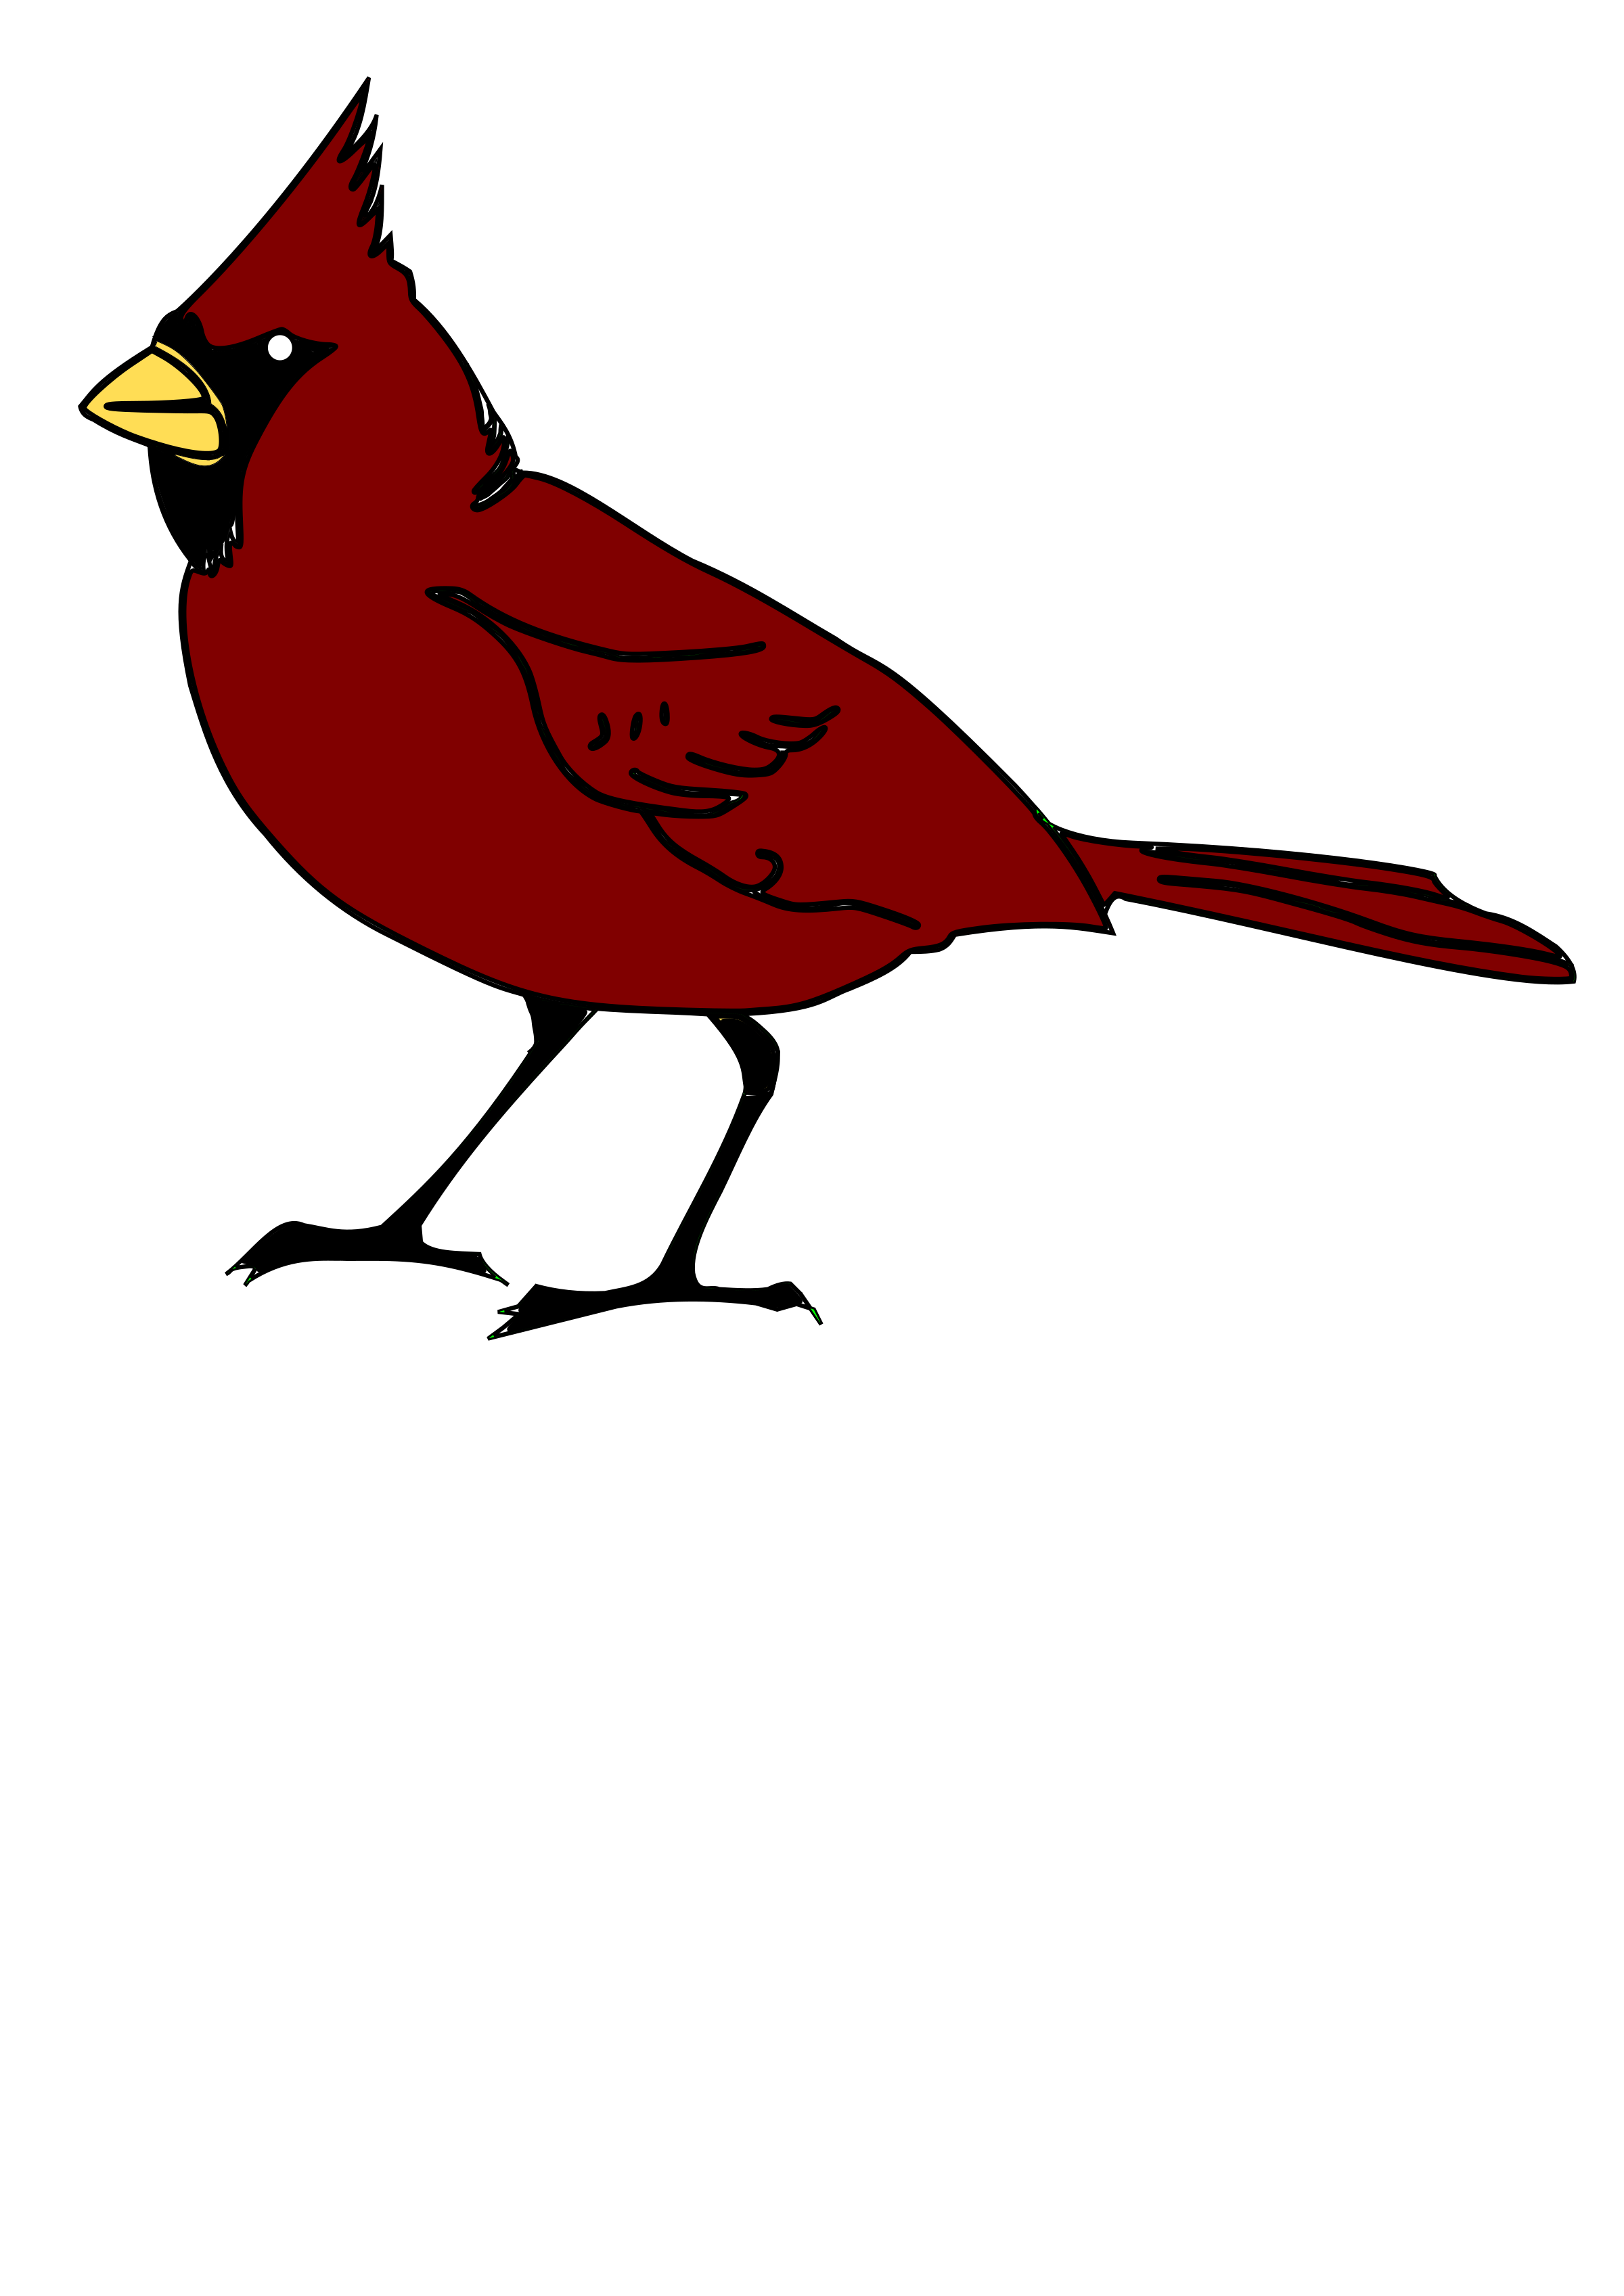 cardinals baseball clipart free download - photo #37